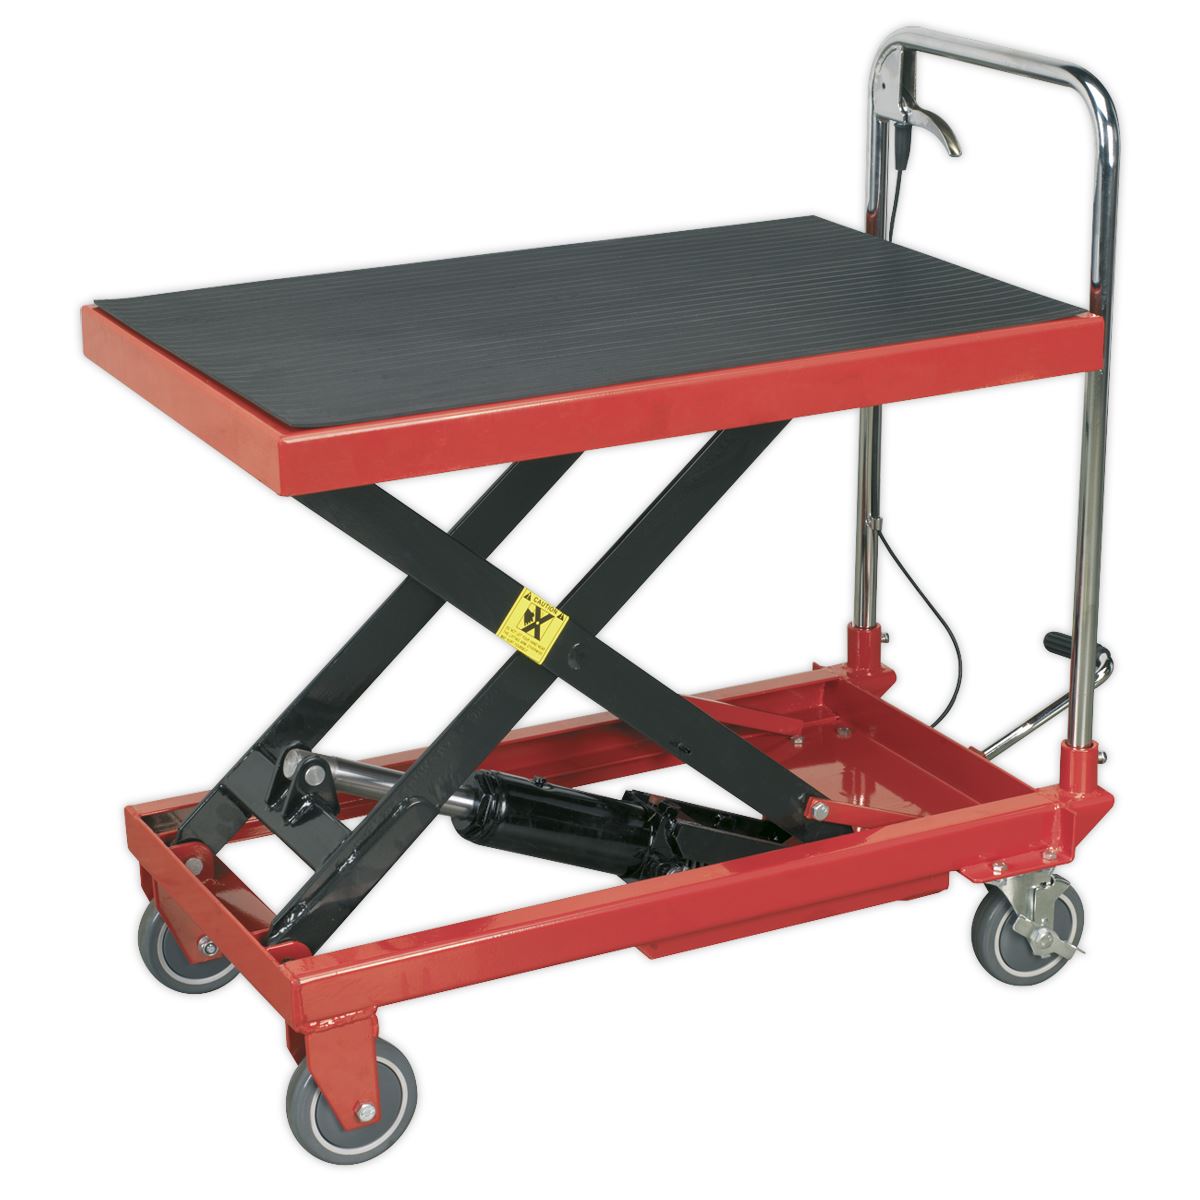 Sealey Hydraulic Scissor Lift Platform Table 300kg